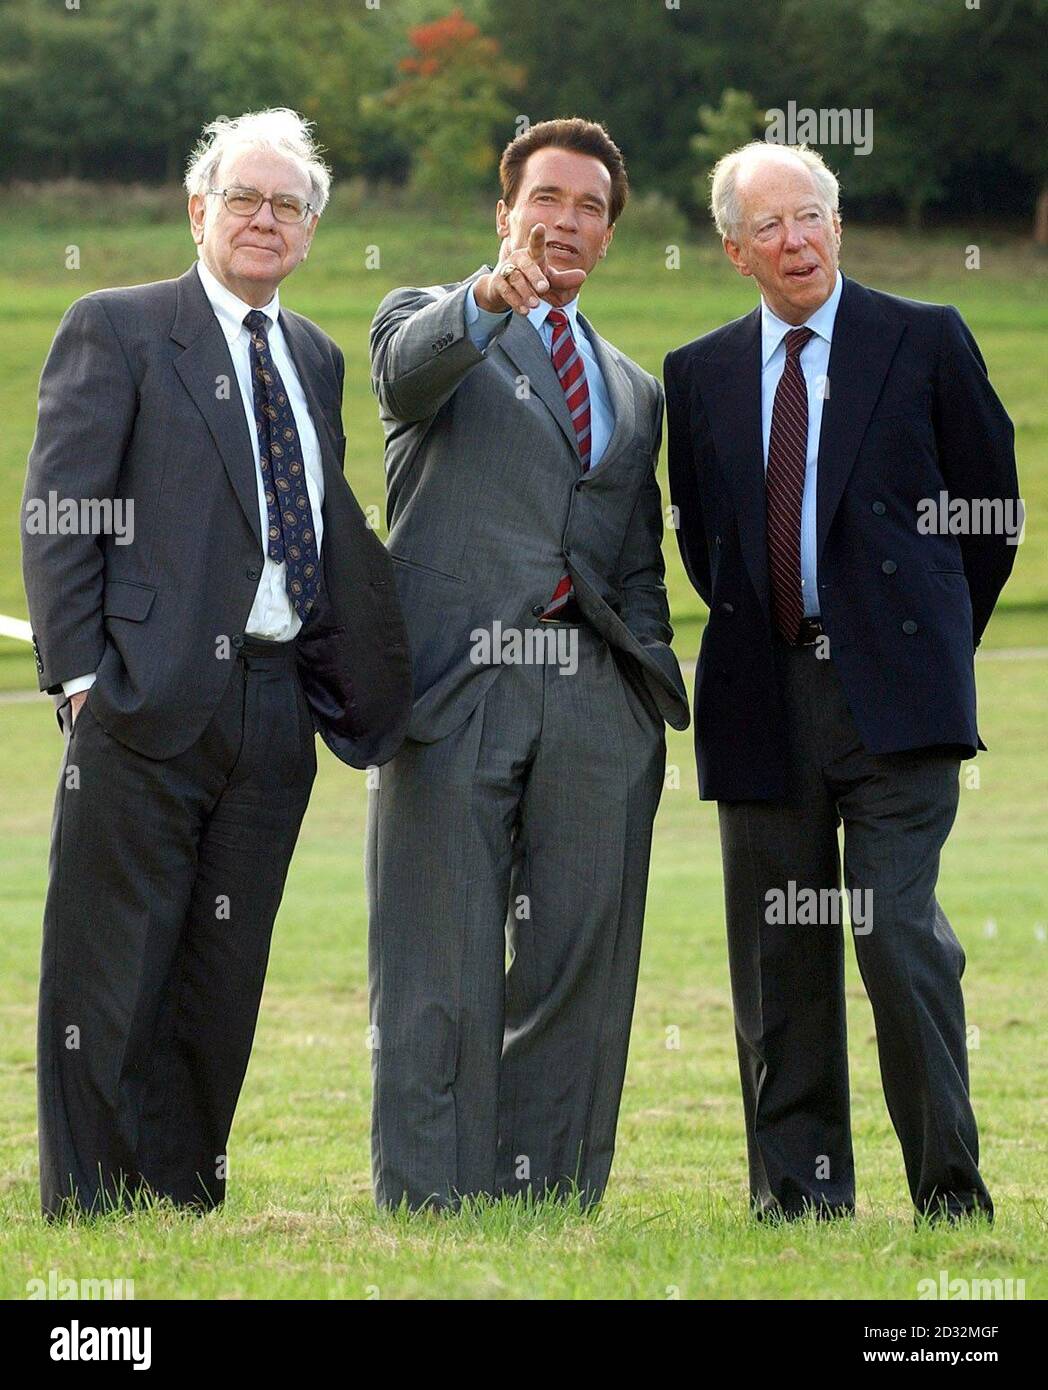 Warren Buffett (links) und Arnold Schwarzenegger werden von Lord Rothschild (rechts) empfangen, als sie im Waddesdon Manor in der Nähe von Aylesbury (35 Meilen nordwestlich von London) ankommen, um eine Konferenz europäischer Wirtschaftsführer zu veranstalten, die von NetJets organisiert wird. * ... die einen Teil des Eigentums an privaten Geschäftsjets verkauft und sich im Besitz der Holdings-Gesellschaft von Mr Buffett, der Firma von Herrn Buffett, der Firma von Herrn Bukshire Hathaway Inc., befindet. Herr Buffett, der zweitreichste Unternehmer der USA, wurde mit potenziellen Investoren in Verbindung gebracht, die den in Schwierigkeiten geratenen Atomkonzern British Energy kaufen möchten. Im Besitz von zwei britischen Stromverteilungsunternehmen, Northern, ist die Firma „The British Electricity Distribution Companies“, „The Stockfoto